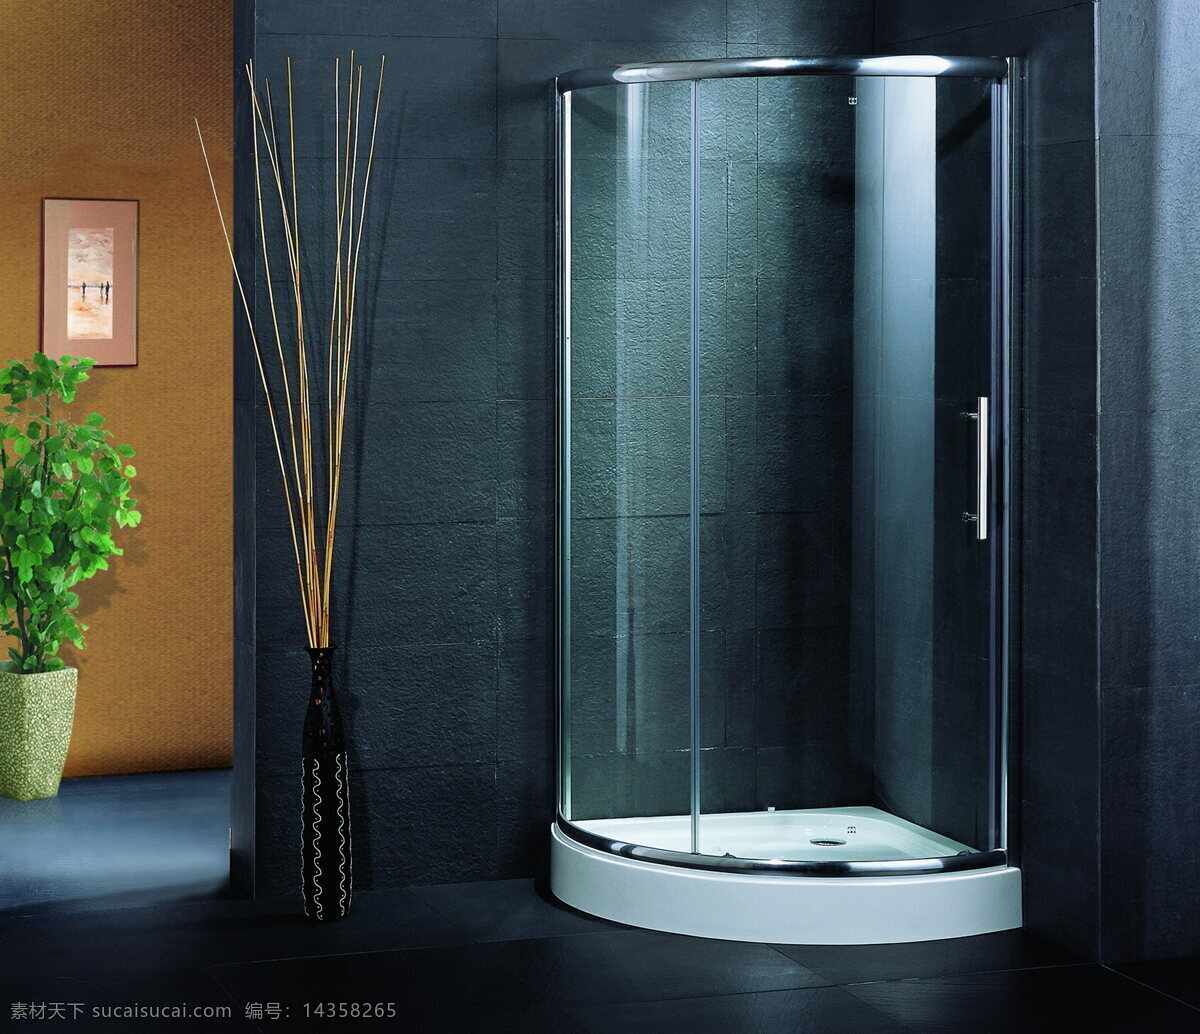 卫浴 家居生活 生活百科 卫浴图片 效果 浴房 装修 装饰 家居装饰素材 室内设计